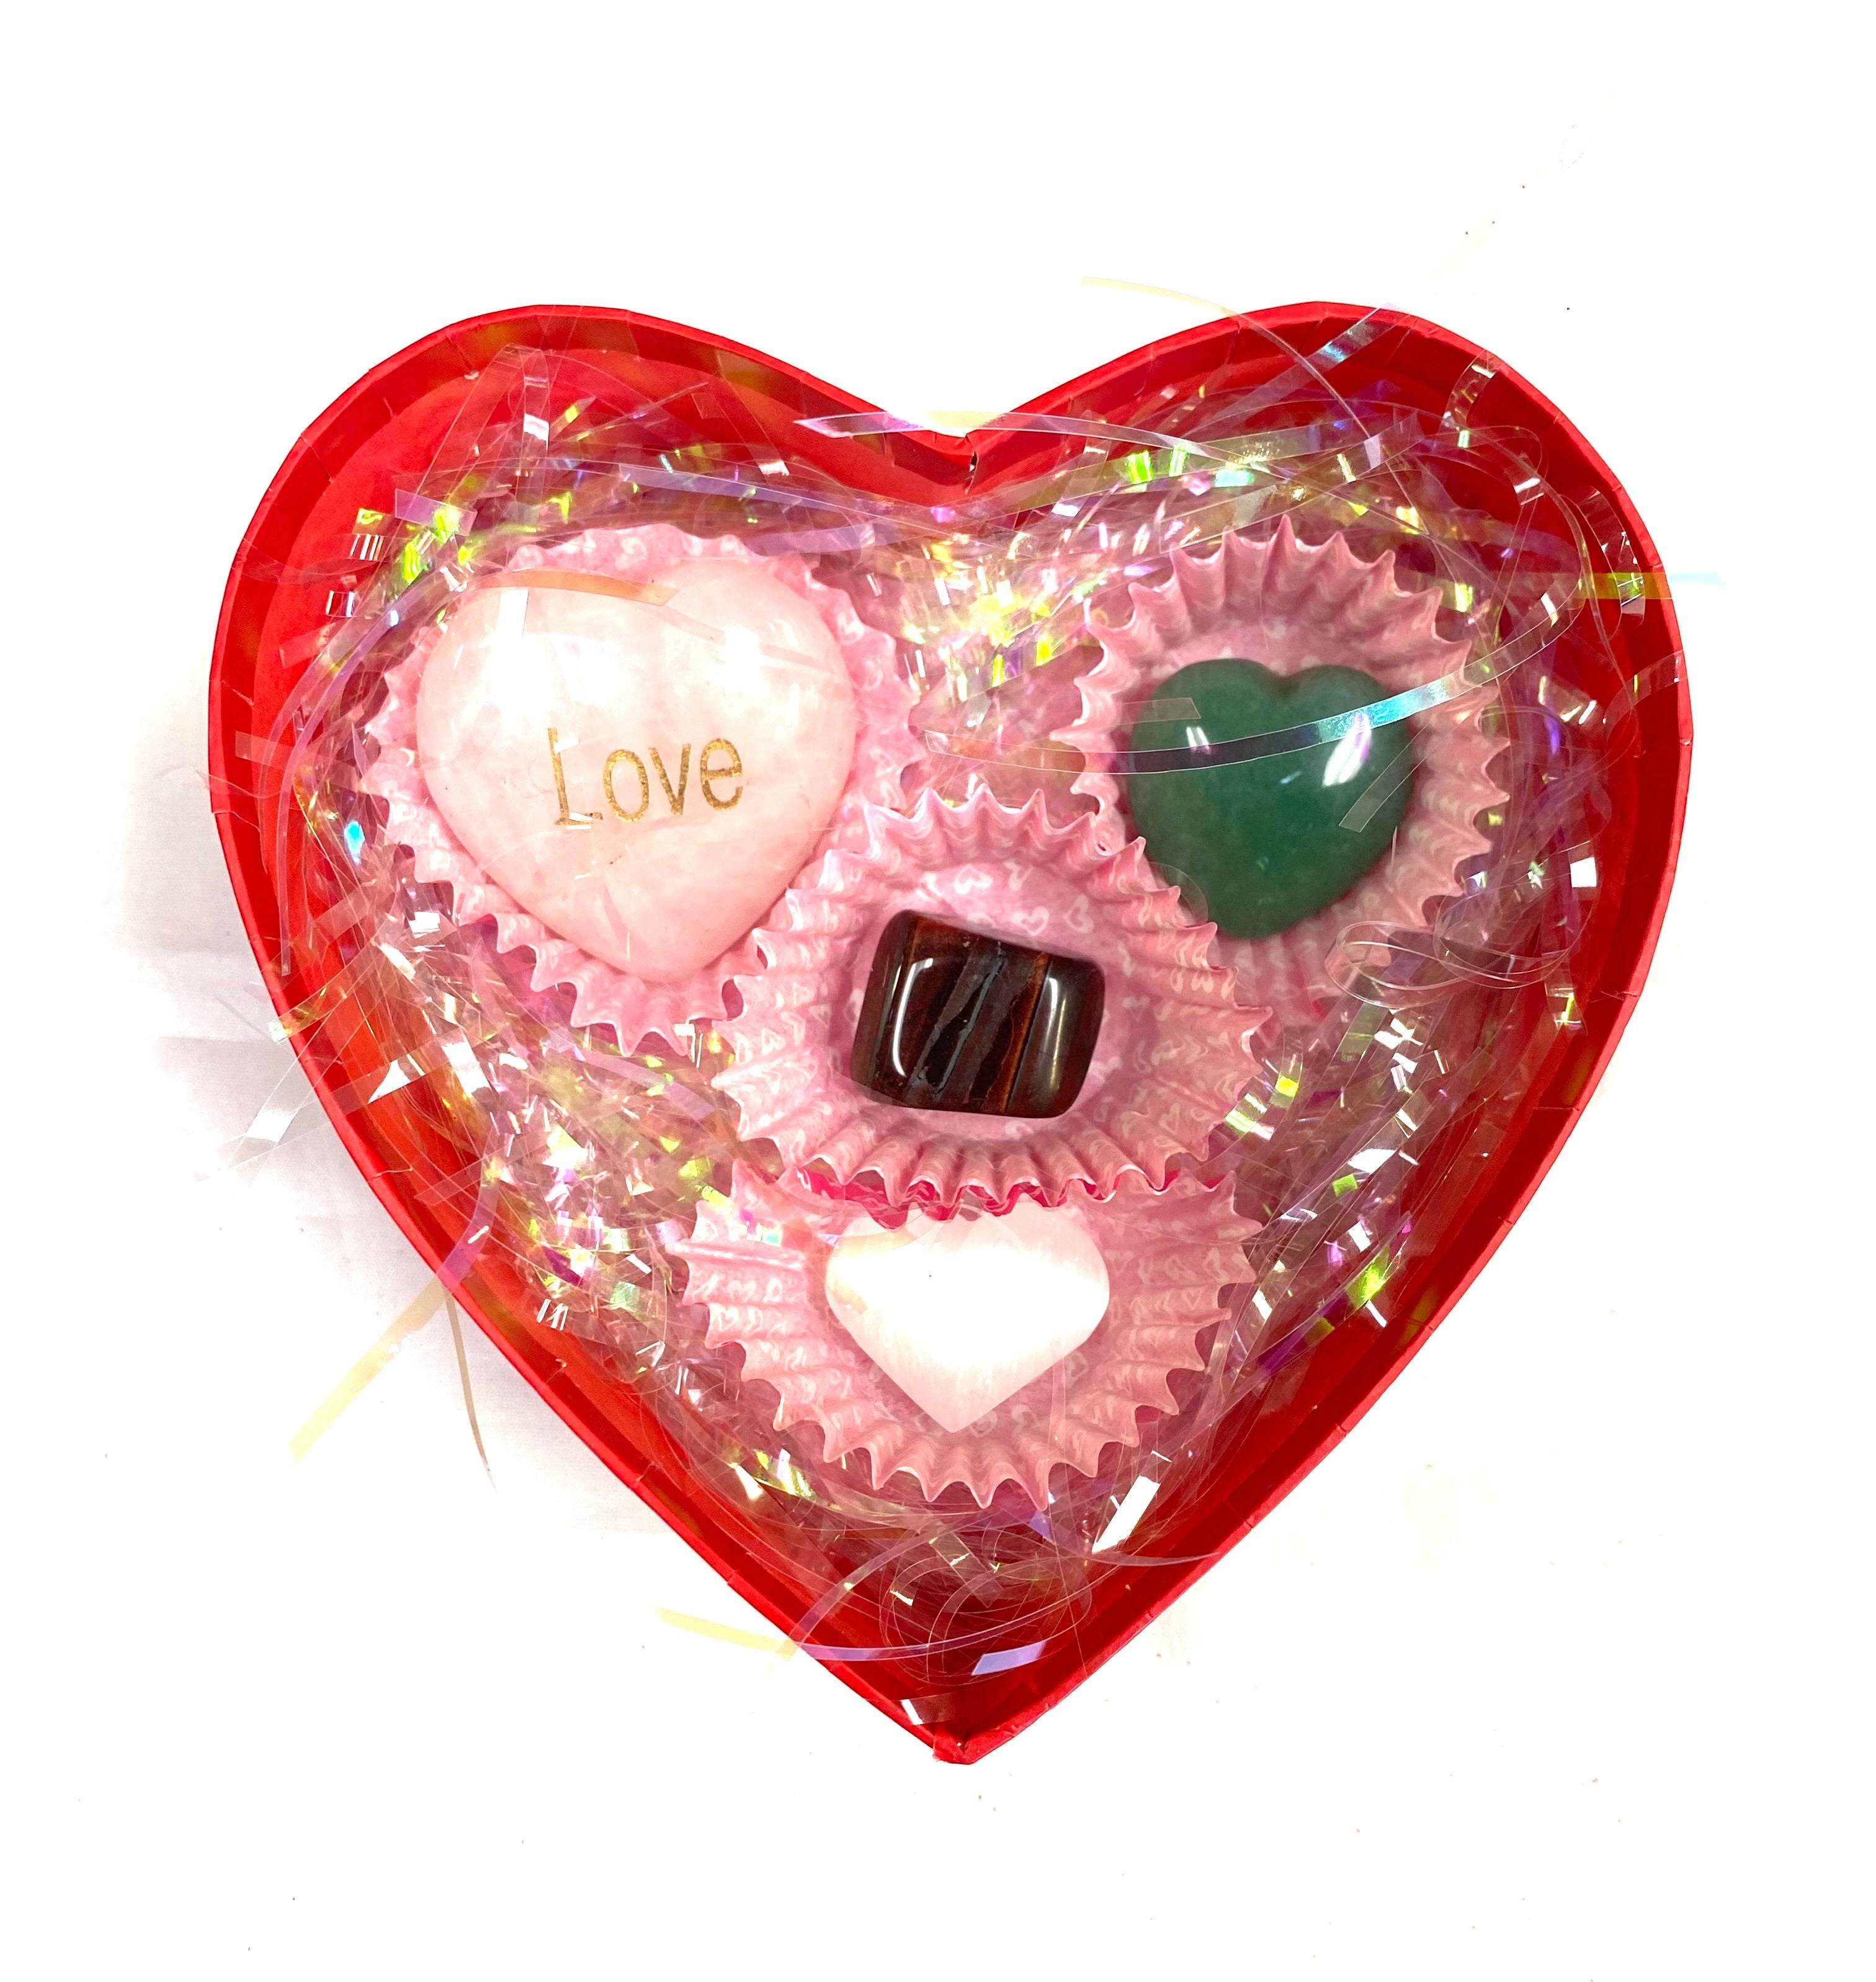 Valentines Heart Box $30 - Lighten Up Shop